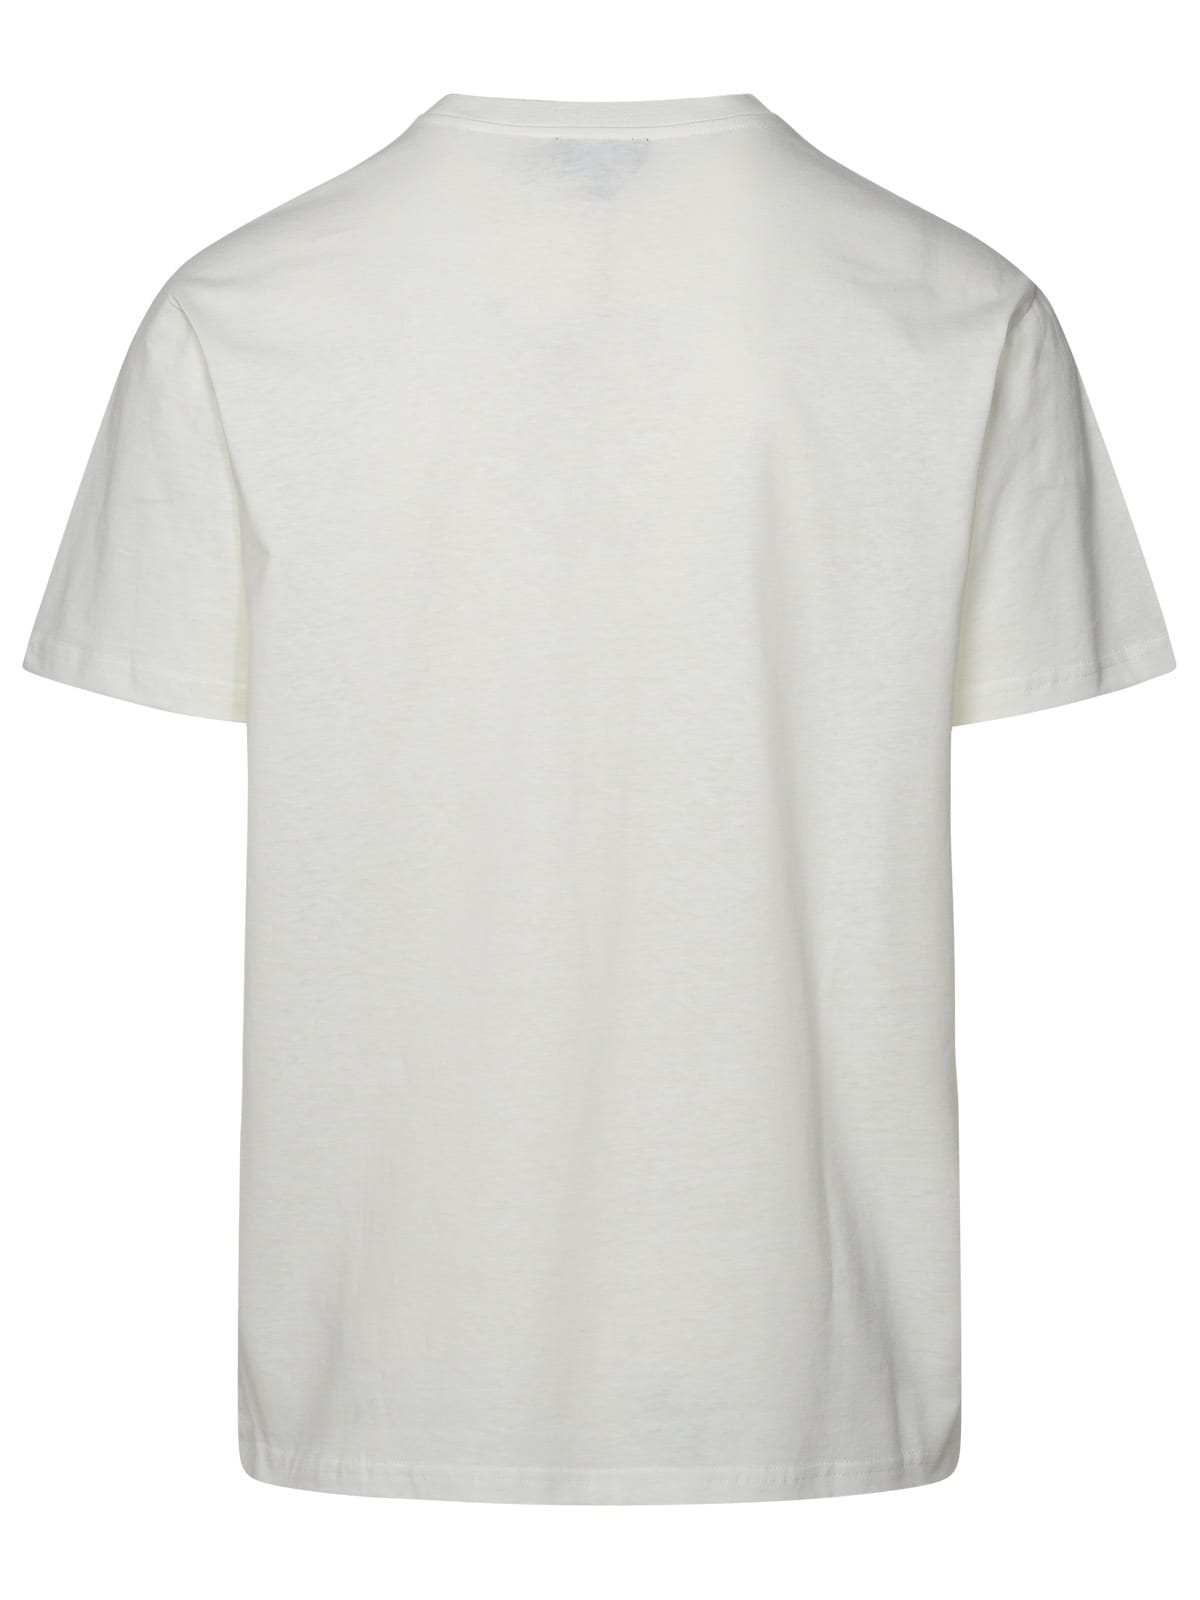 Shop Apc White Cotton T-shirt